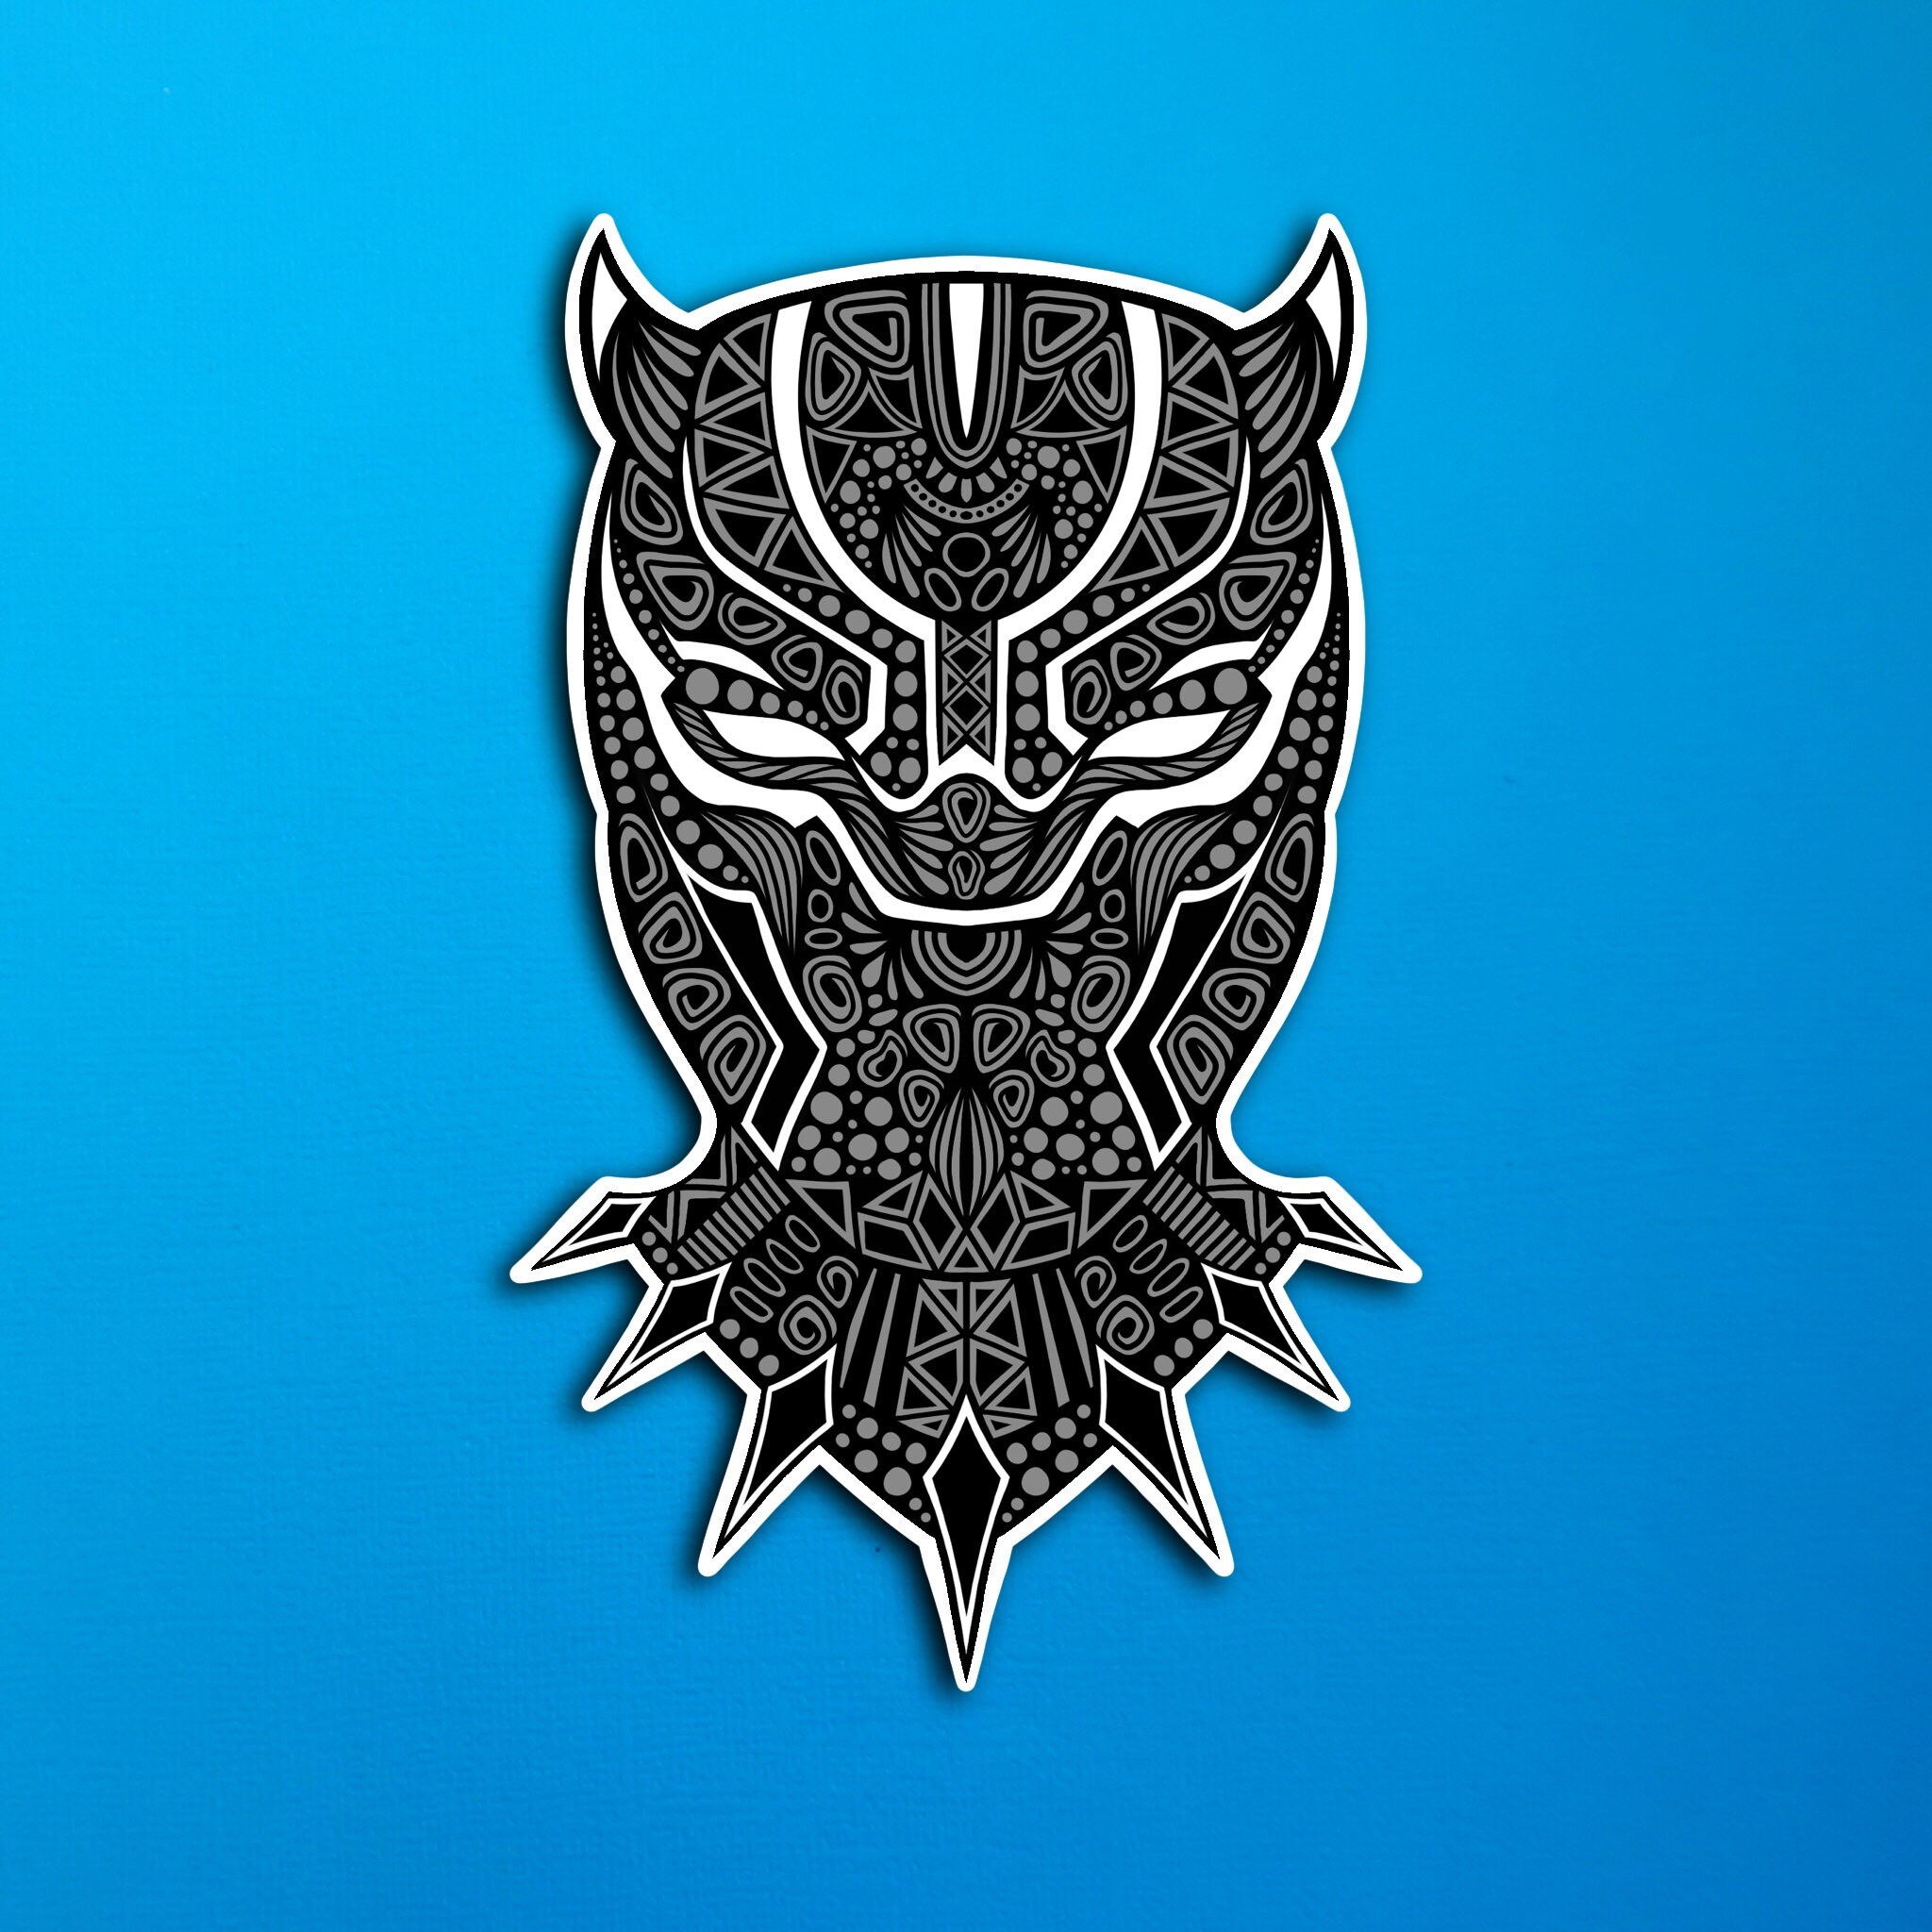 Premium Vector | Tiger symbol logo tribal tattoo design stencil vector  illustration